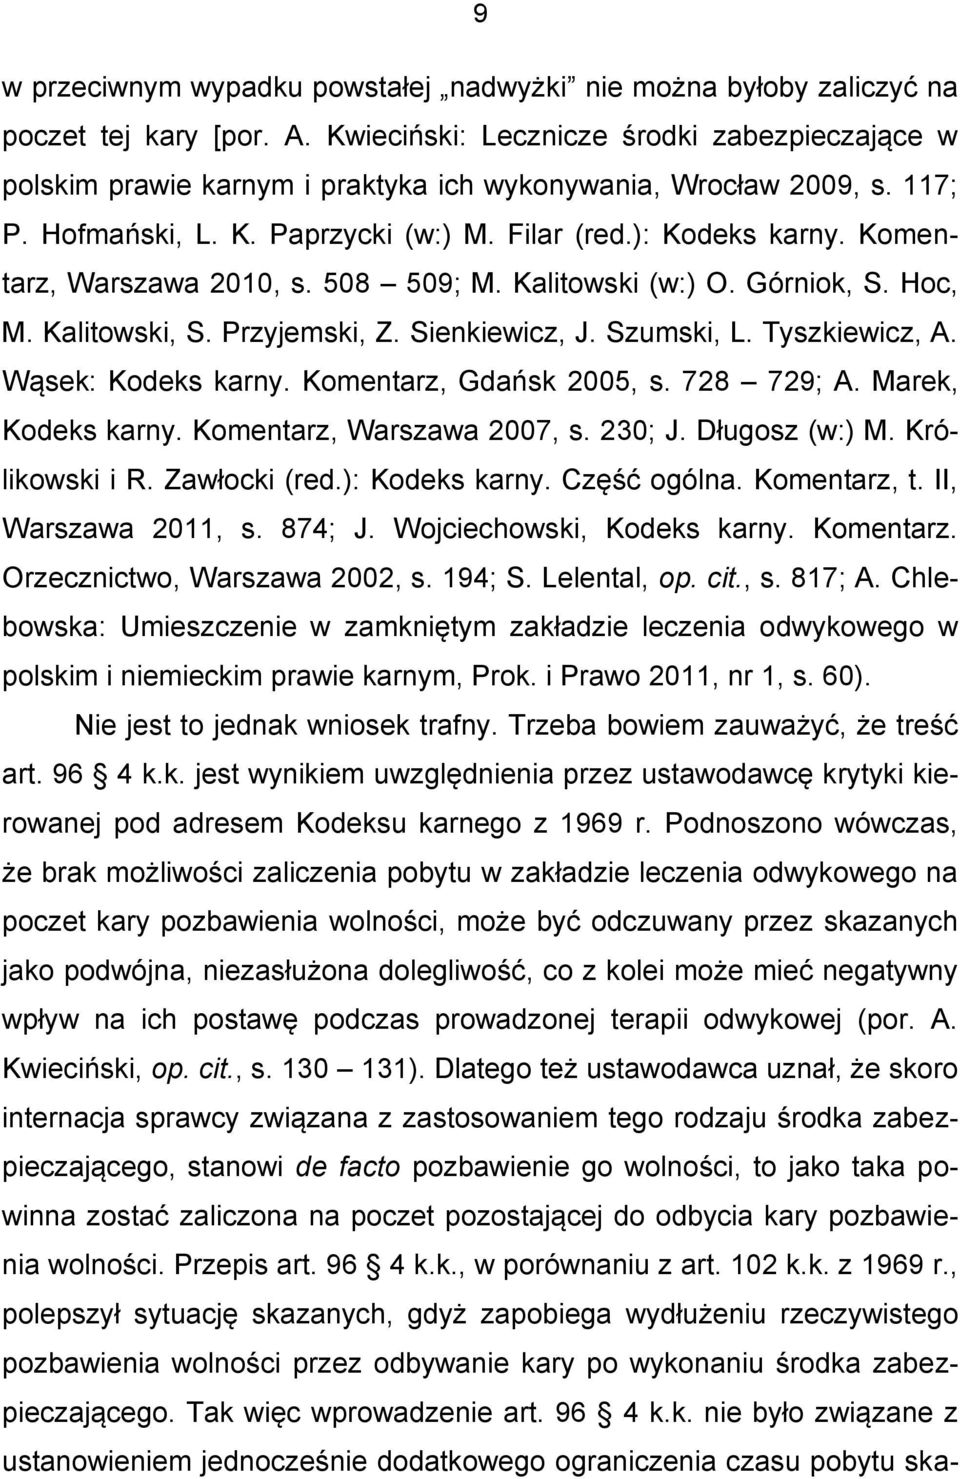 Komentarz, Warszawa 2010, s. 508 509; M. Kalitowski (w:) O. Górniok, S. Hoc, M. Kalitowski, S. Przyjemski, Z. Sienkiewicz, J. Szumski, L. Tyszkiewicz, A. Wąsek: Kodeks karny.